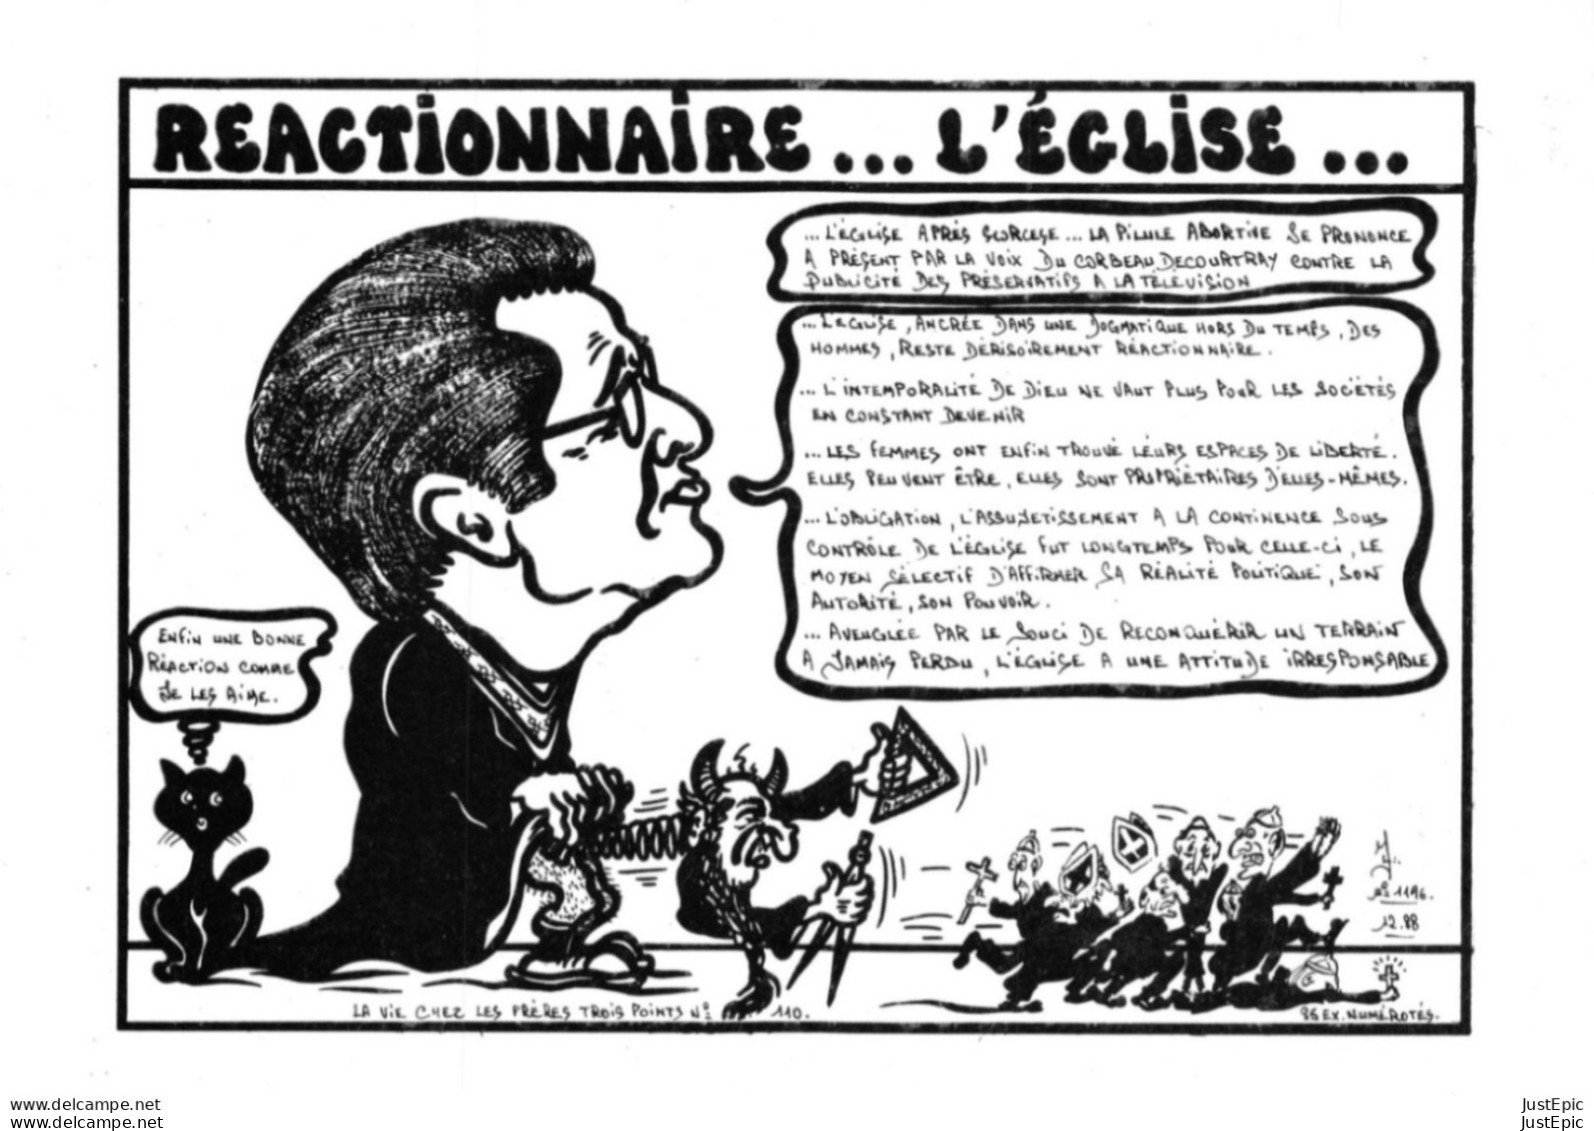 LARDIE Jihel Tirage 85 Ex.Caricature Guy PIAU Grand Maitre De La Loge De France Franc-maçonnerie Anticlérical Cpm - Philosophie